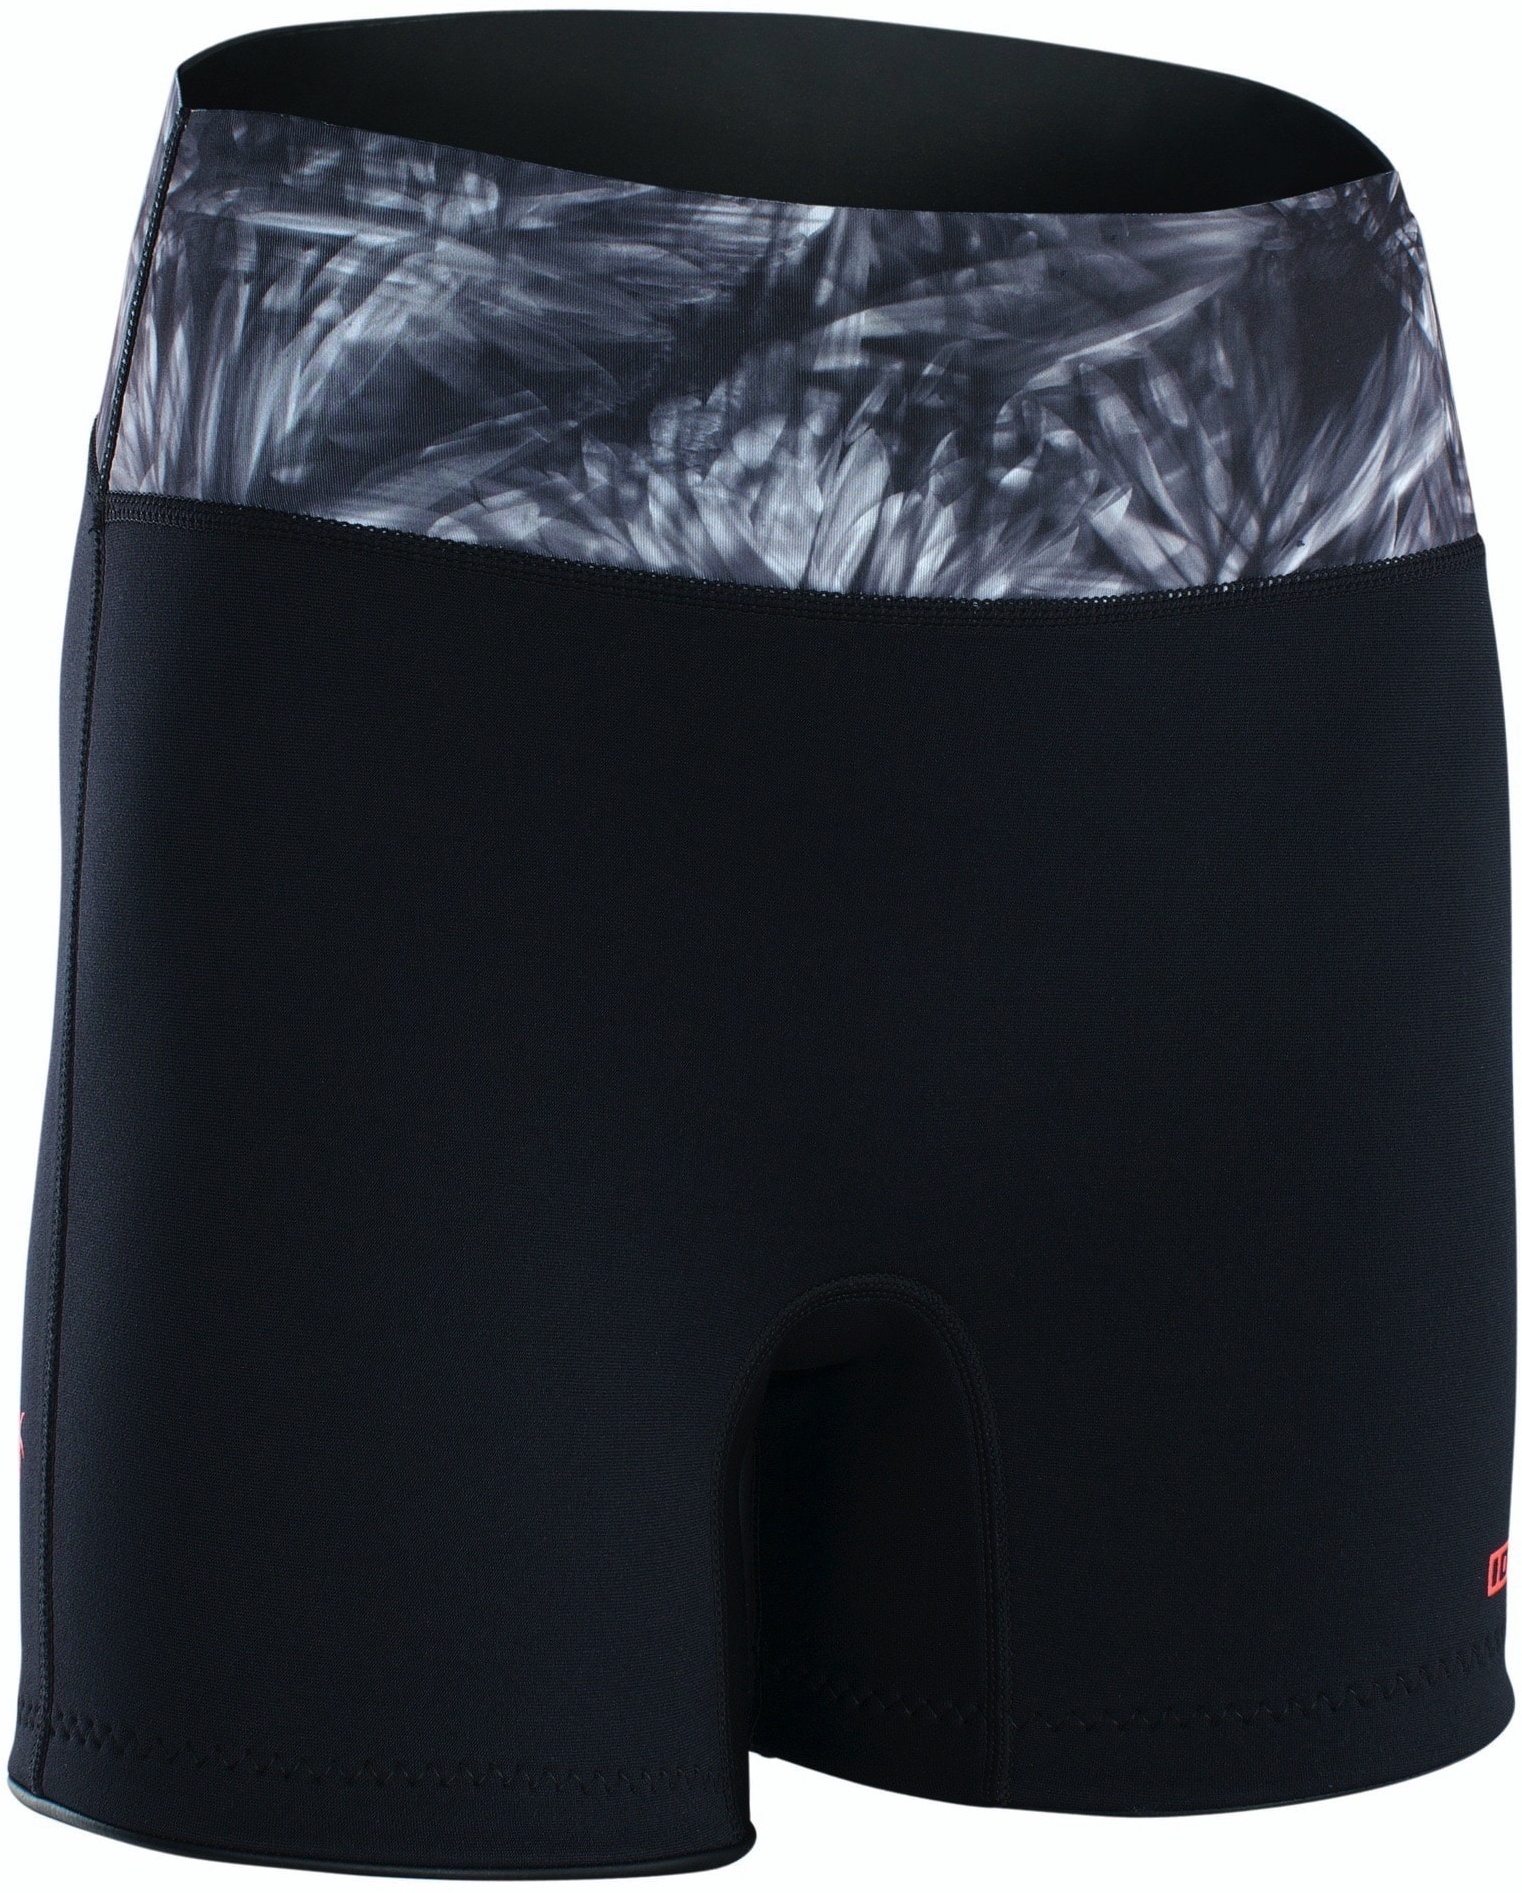 ION Neo Shorts Damen 23 Hose Warm Unterteil Rushguard Leicht, Größe: S, Farbe: 013 black-flowers